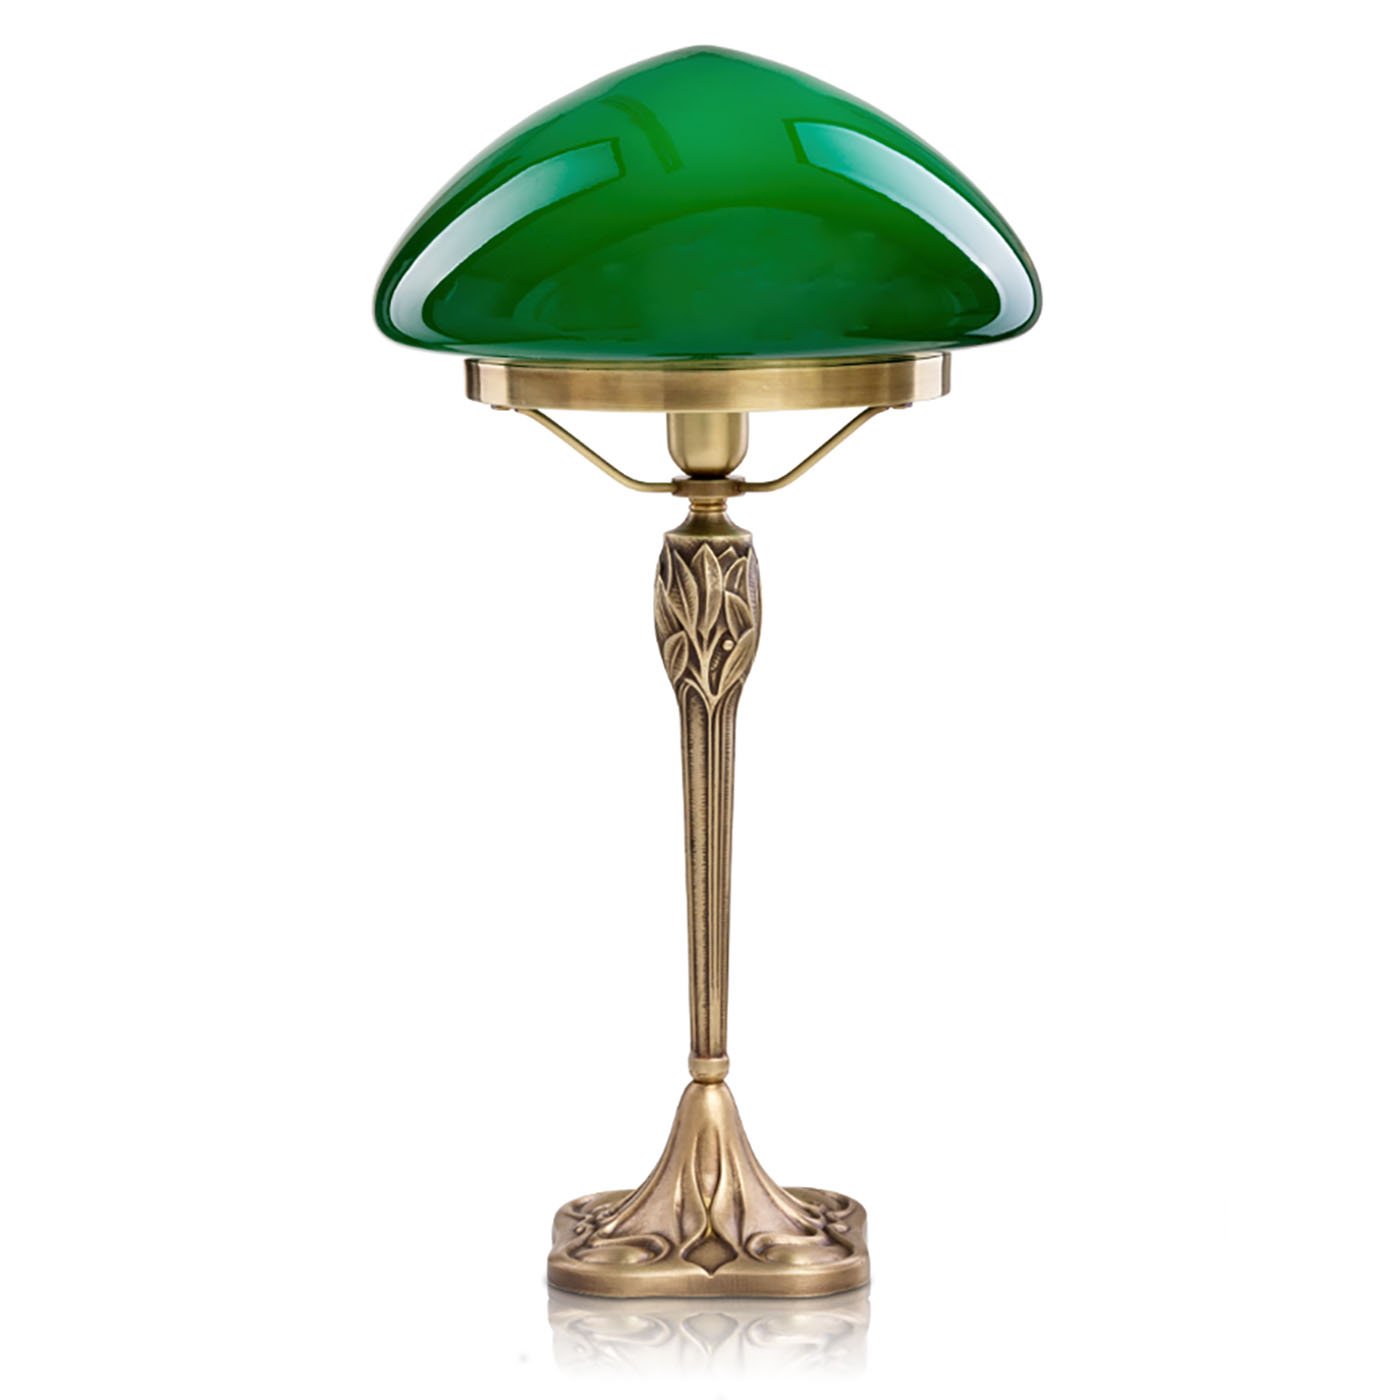 Authentische Pilz-Tischleuchte mit Jugendstil-Ornamenten, Glas in grün oder weiß: Hier mit grünem Glasschirm, antik handpatiniert